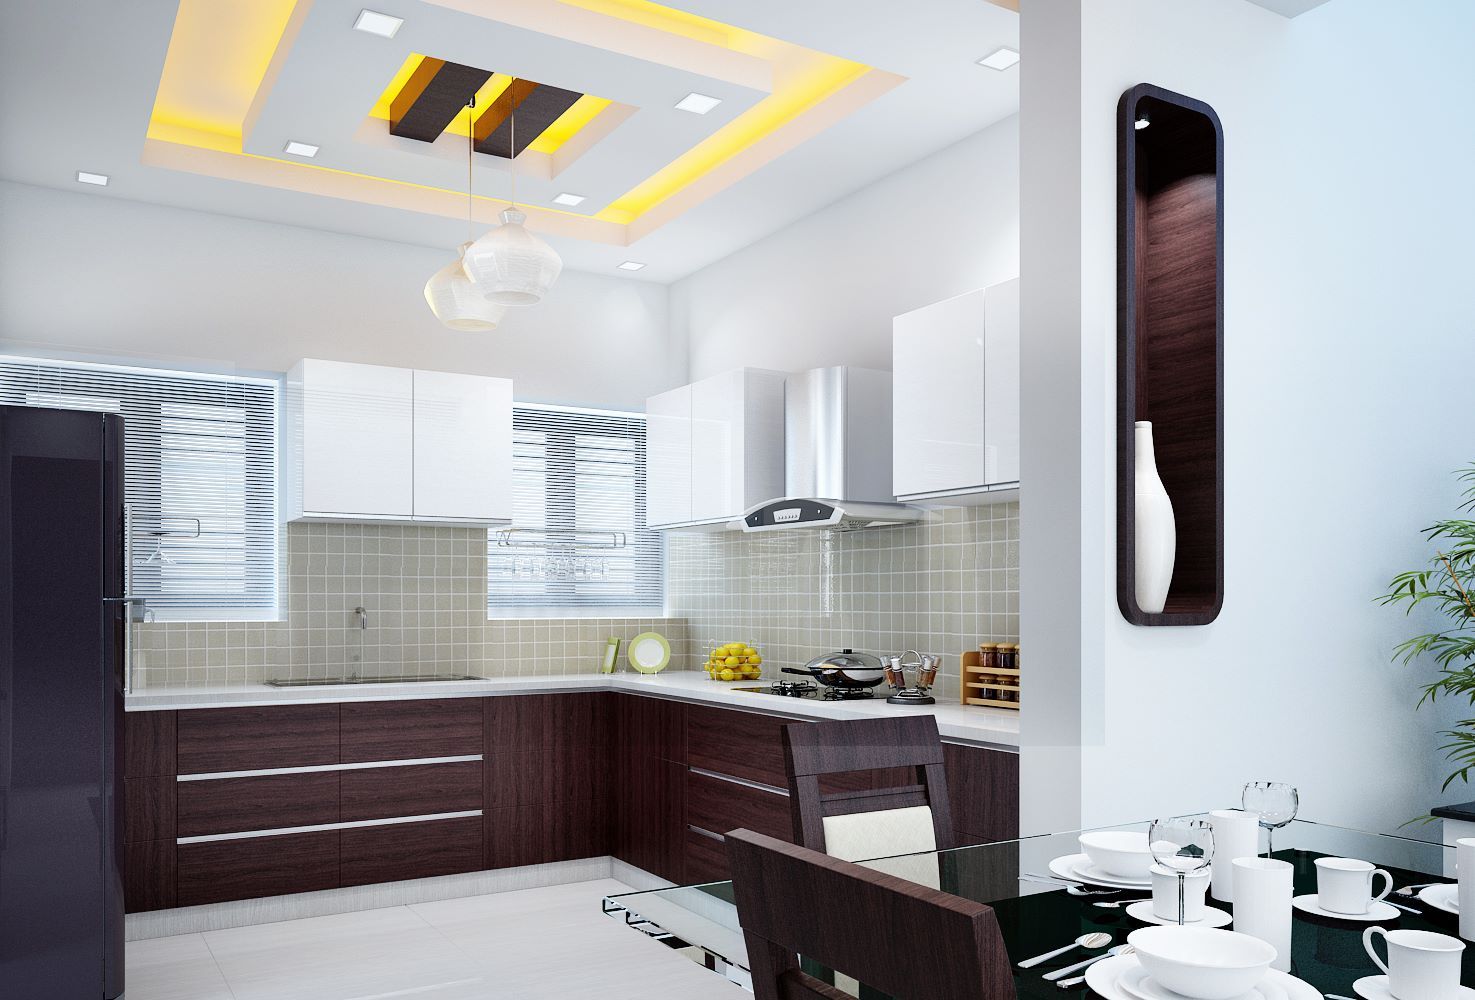 Kitchen Designs, Infra I Nova Pvt.Ltd Infra I Nova Pvt.Ltd Modern style kitchen